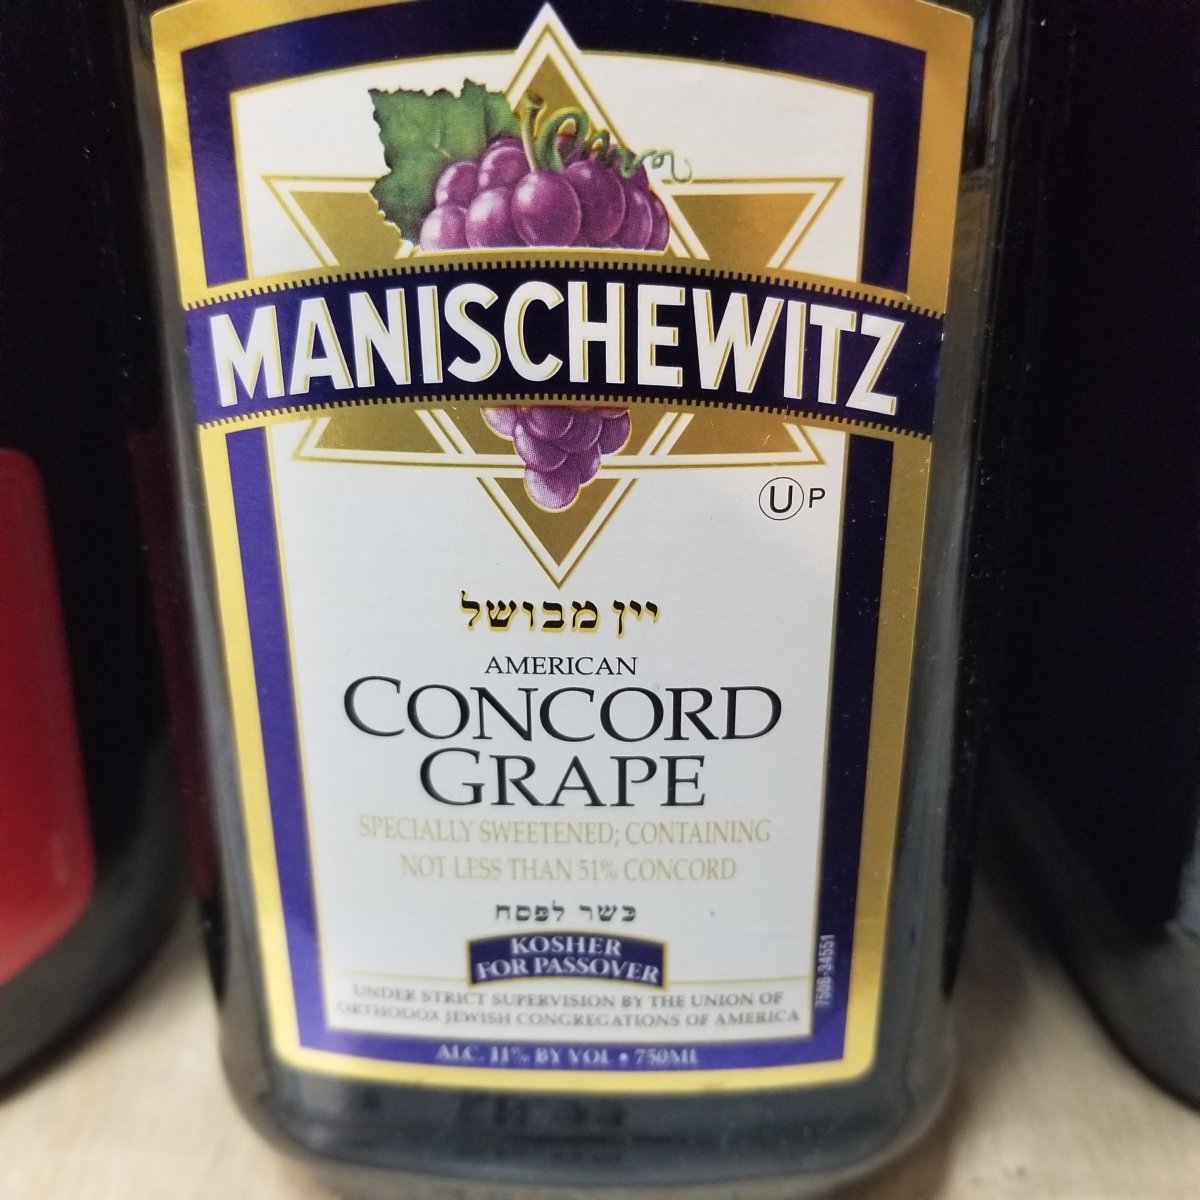 Manischewitz Concord Grape Red Wine - 3 L jug